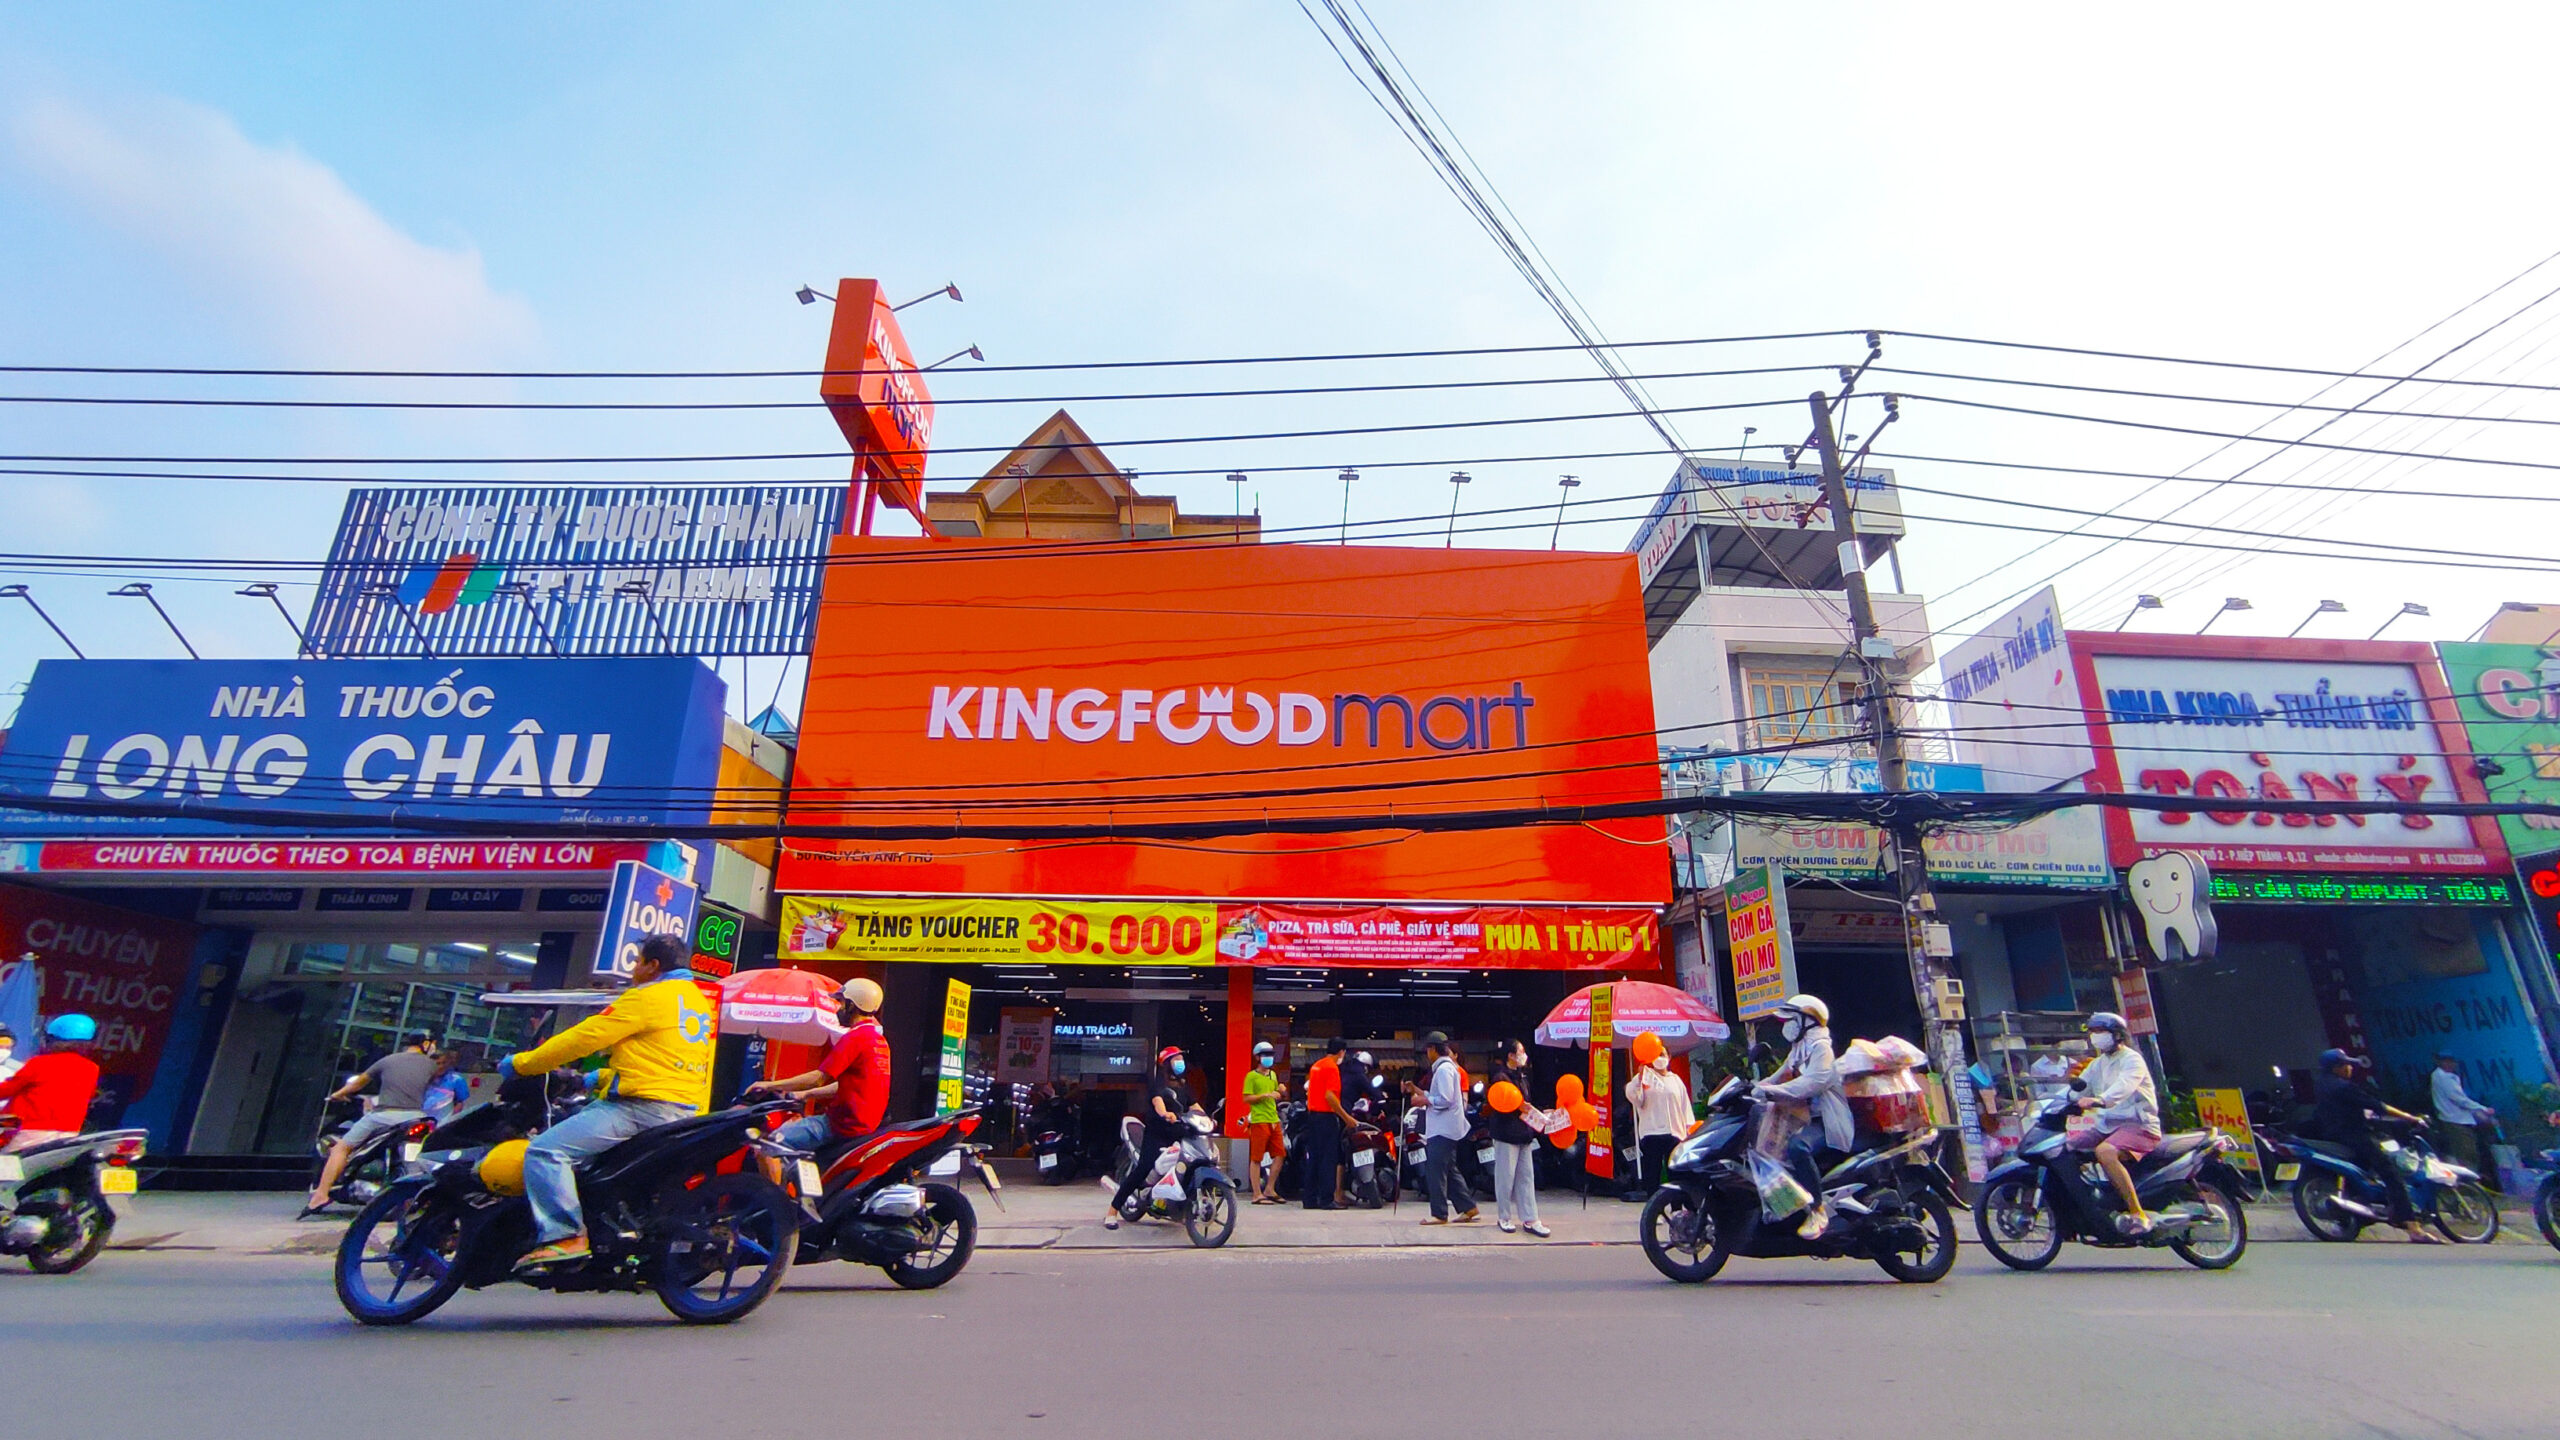 Kingfoodmart Nguyễn Ảnh Thủ, Q.12